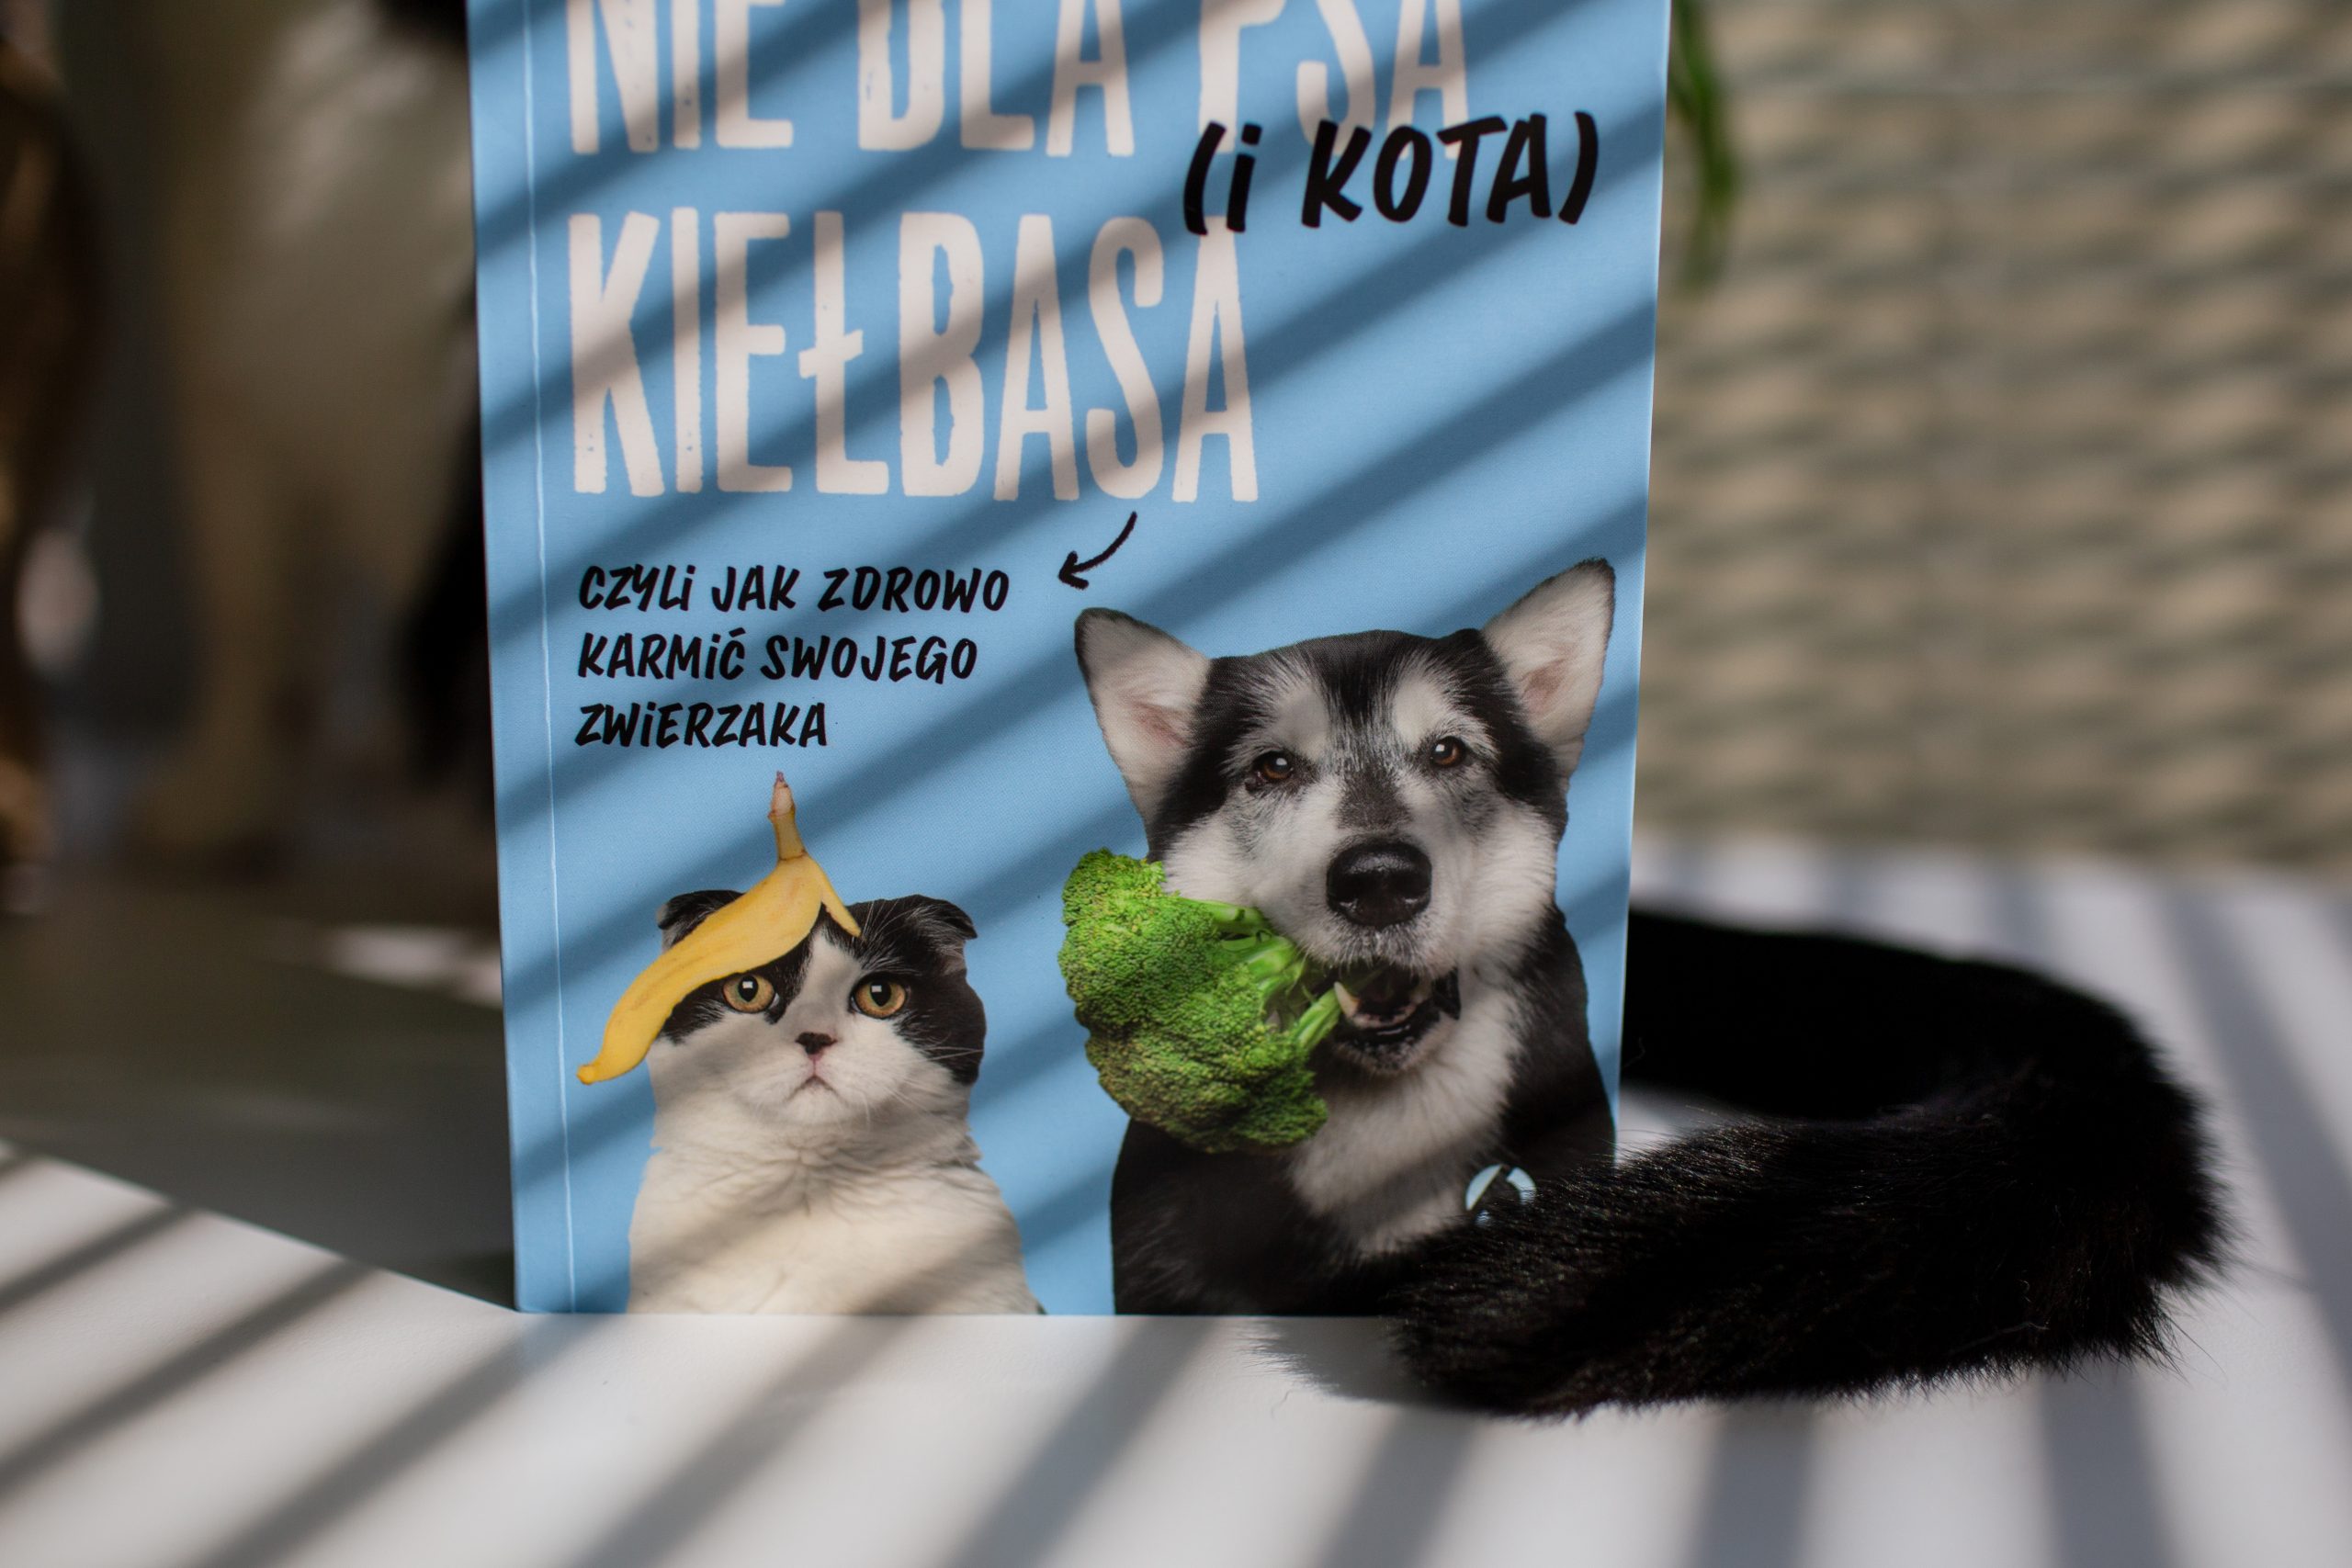 „Nie dla psa (i kota) kiełbasa” – recenzja książki